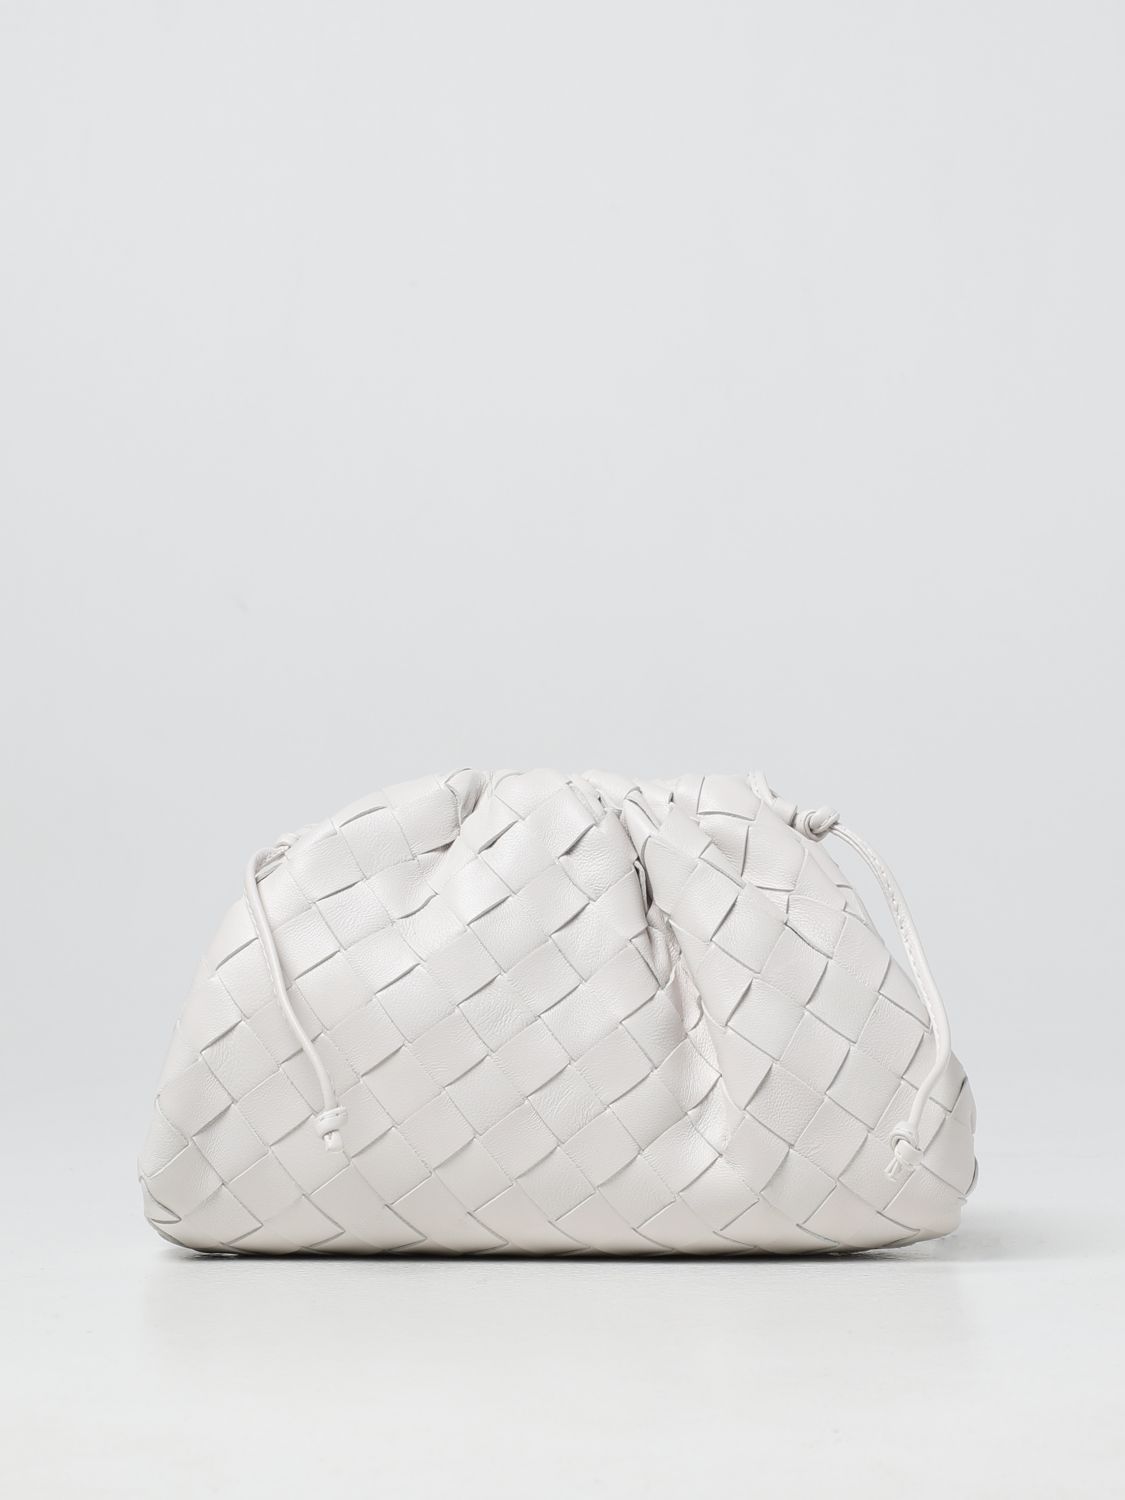 BOTTEGA VENETA: intreccio leather mini pouch - White | Bottega Veneta ...